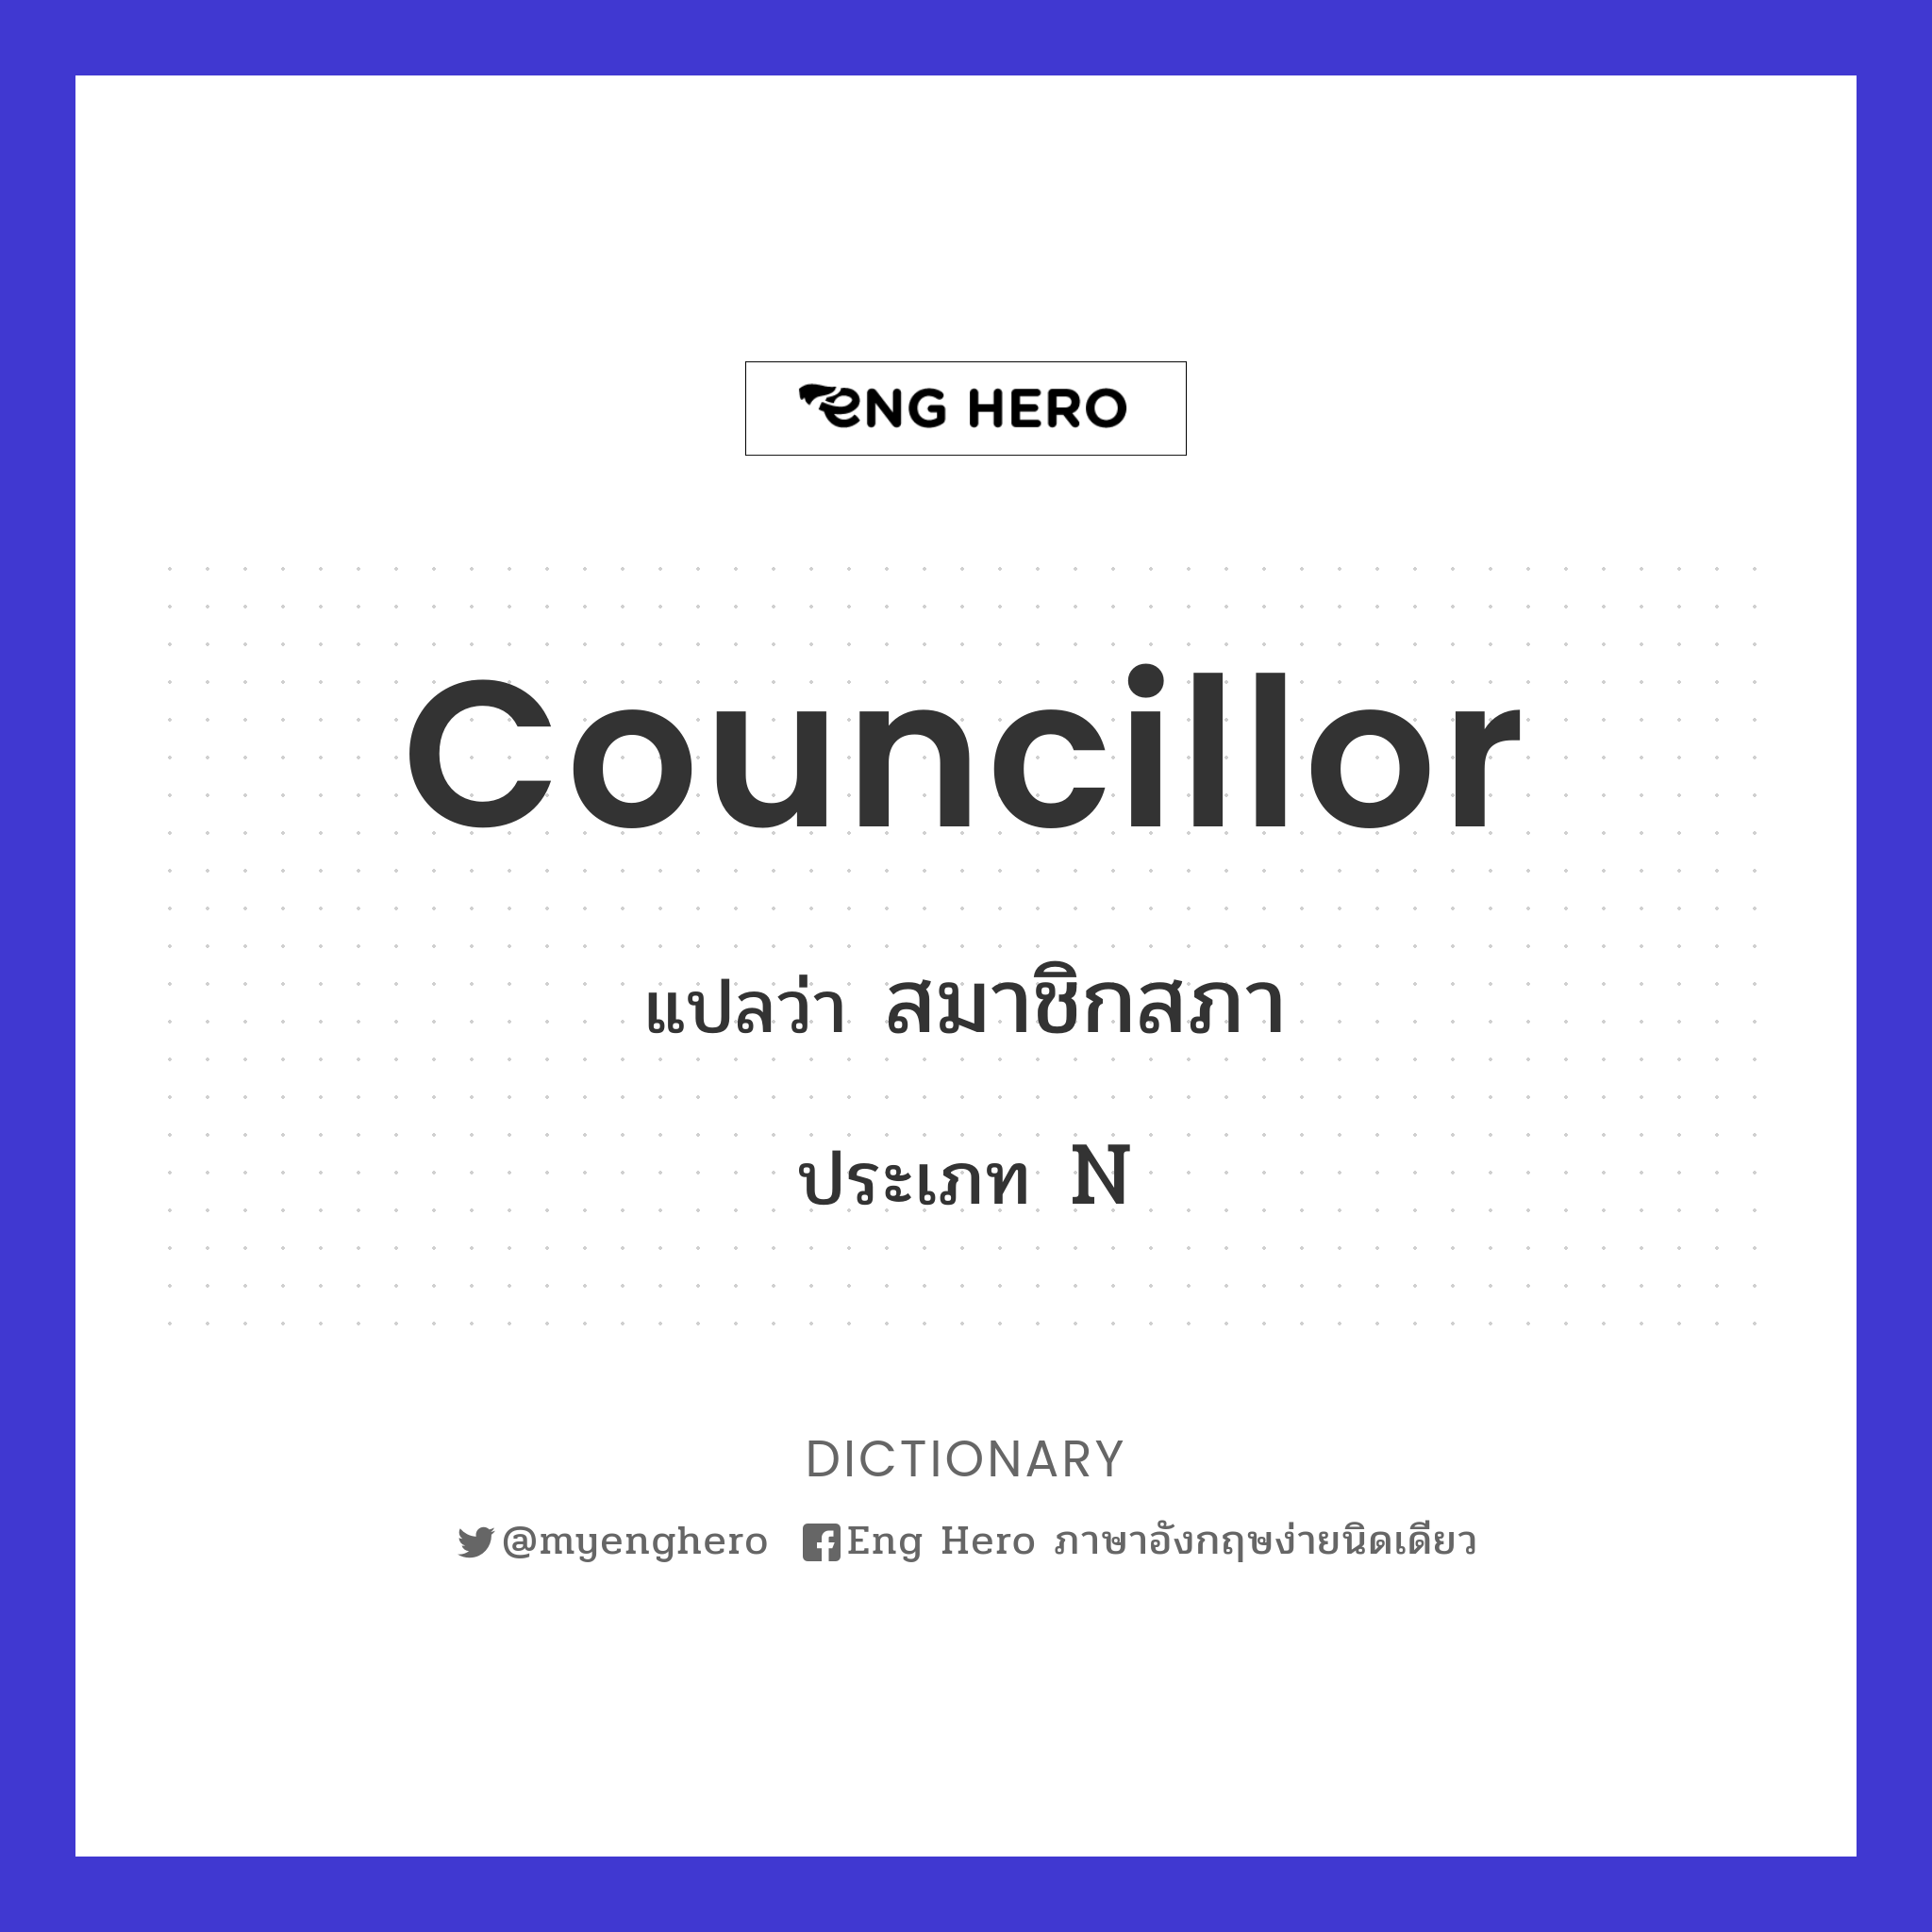 councillor